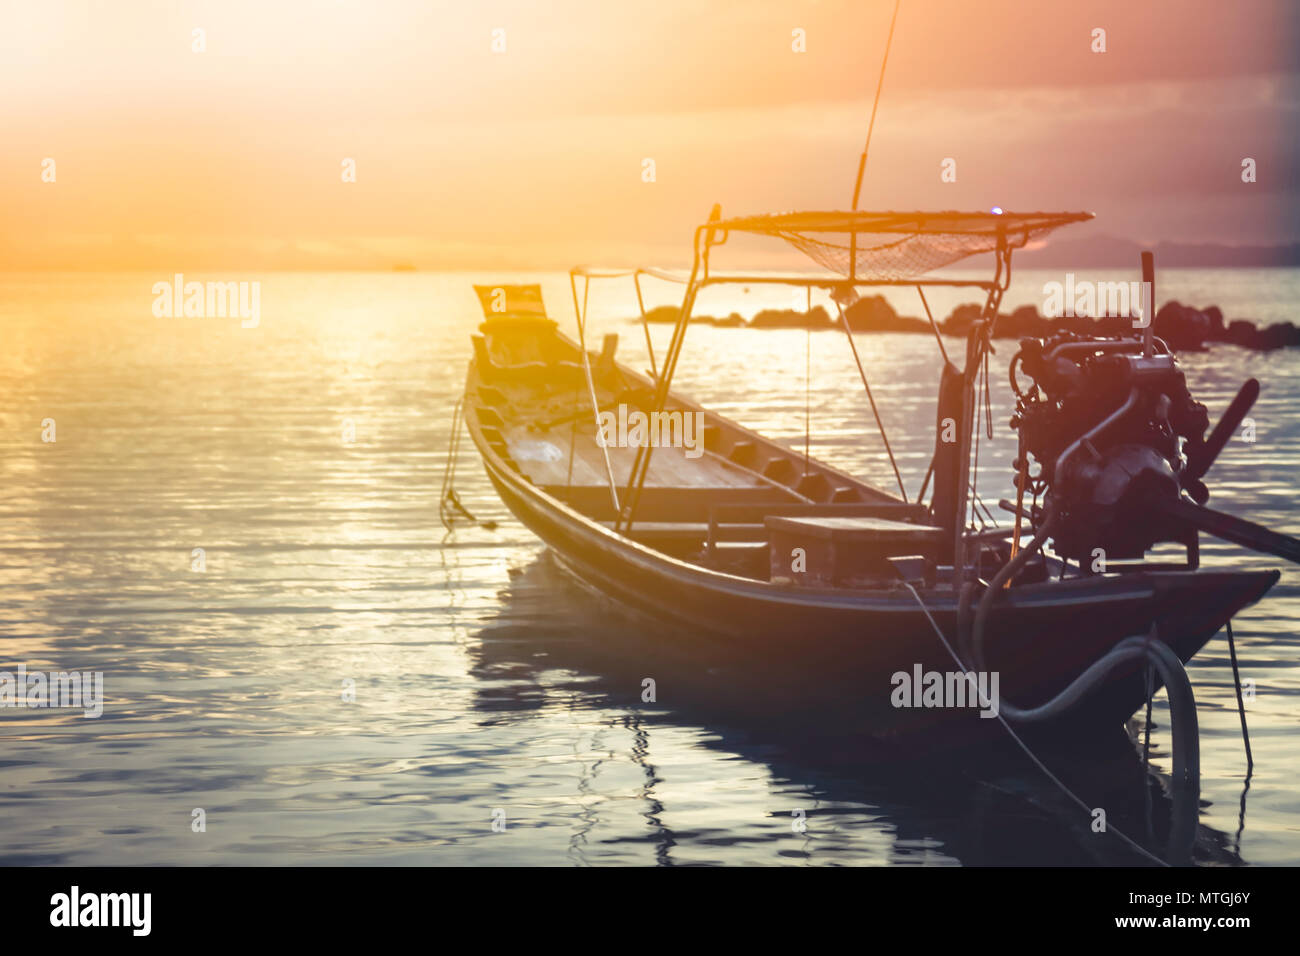 Asia lifestyle landscape sea sunset boat horizon orange sky Stock Photo